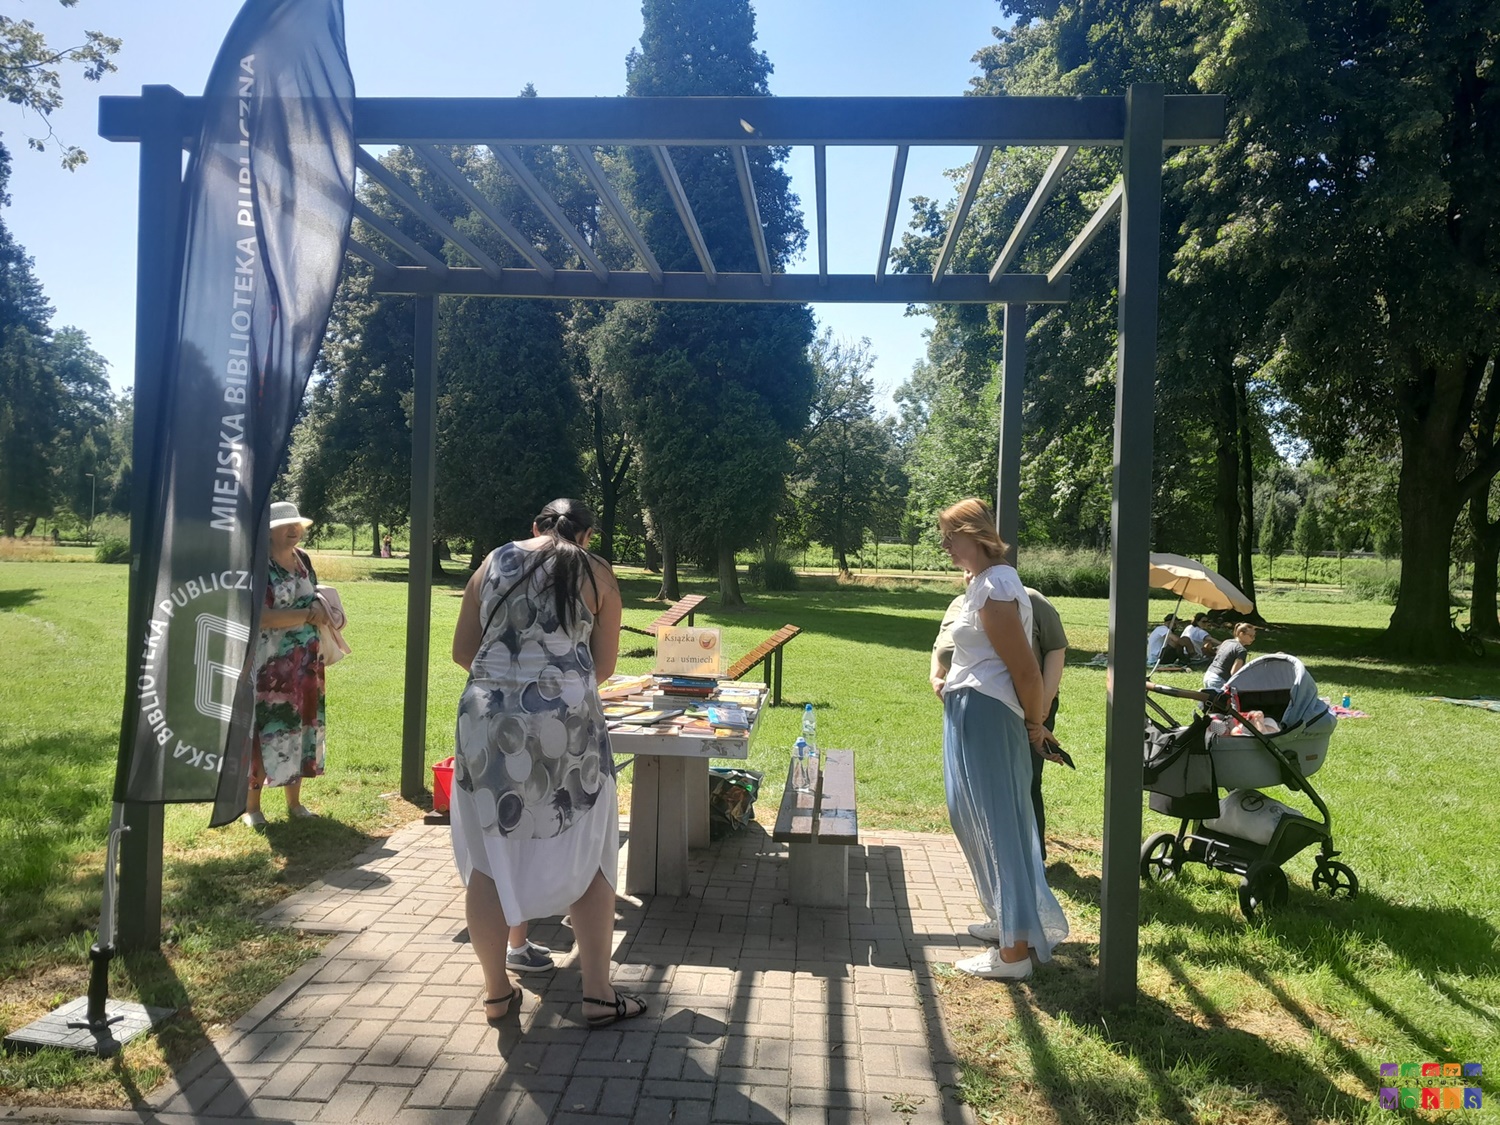 Zdjęcie przedstawiające stolik pod pergolą metalową przy którym stoją ludzie. W tle widać trawnik oraz drzewa parkowe. Po prawej wózek dziecięcy